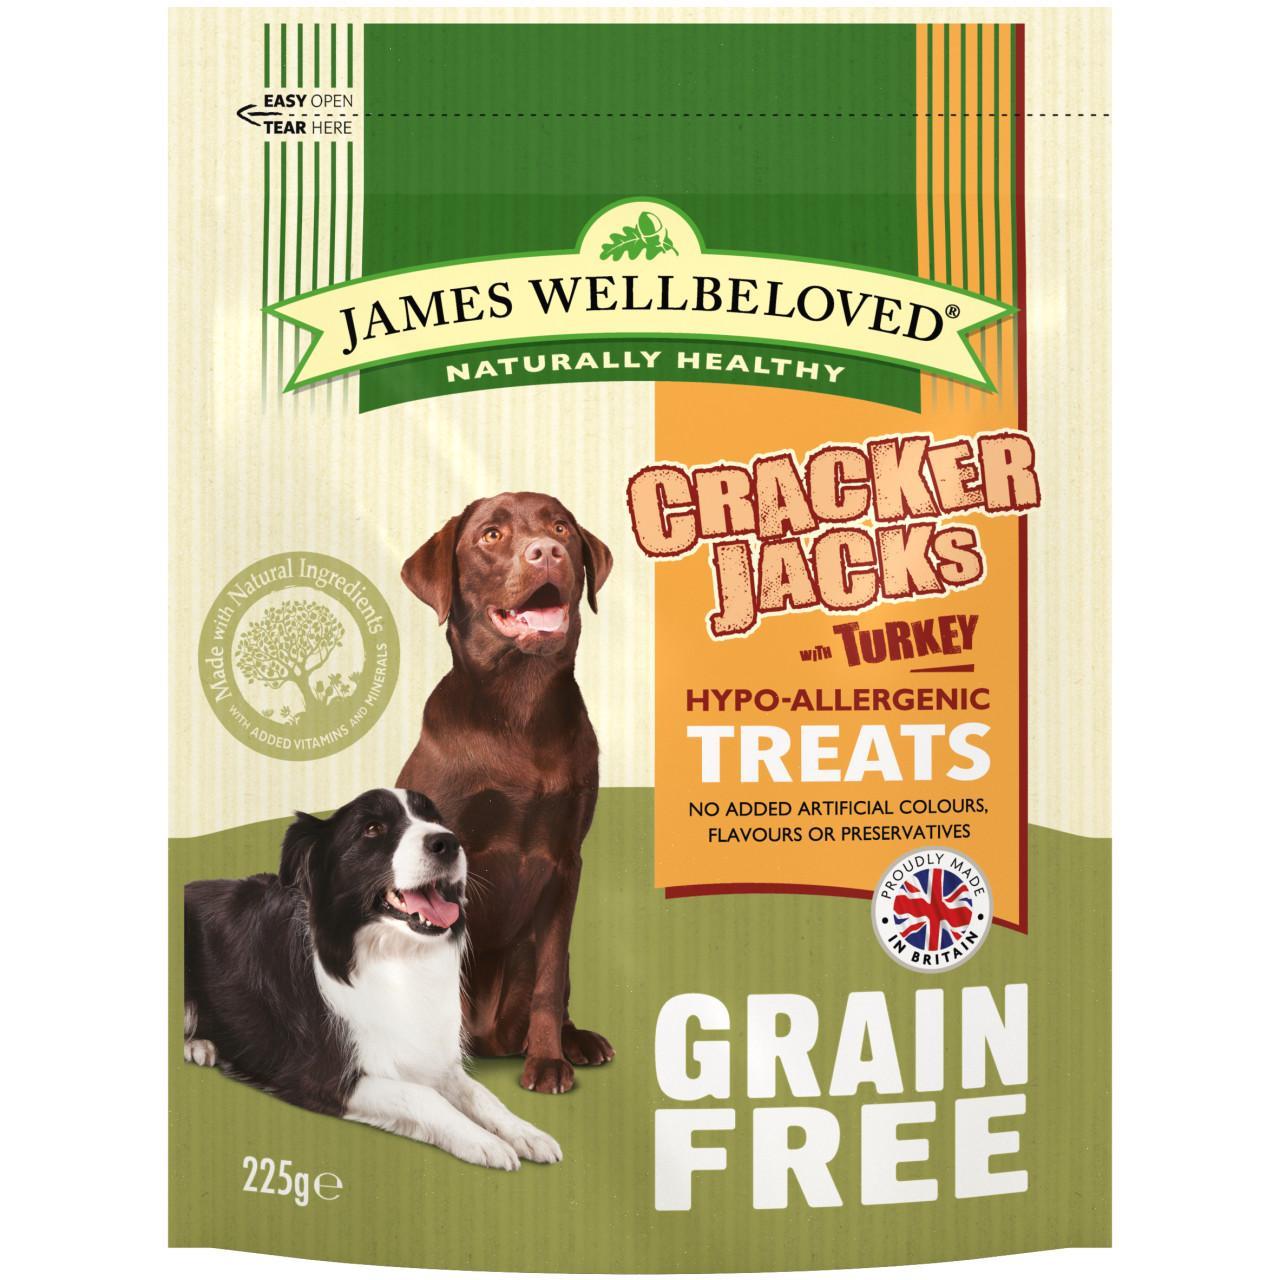 An image of James Wellbeloved Grain Free Turkey Crackerjacks